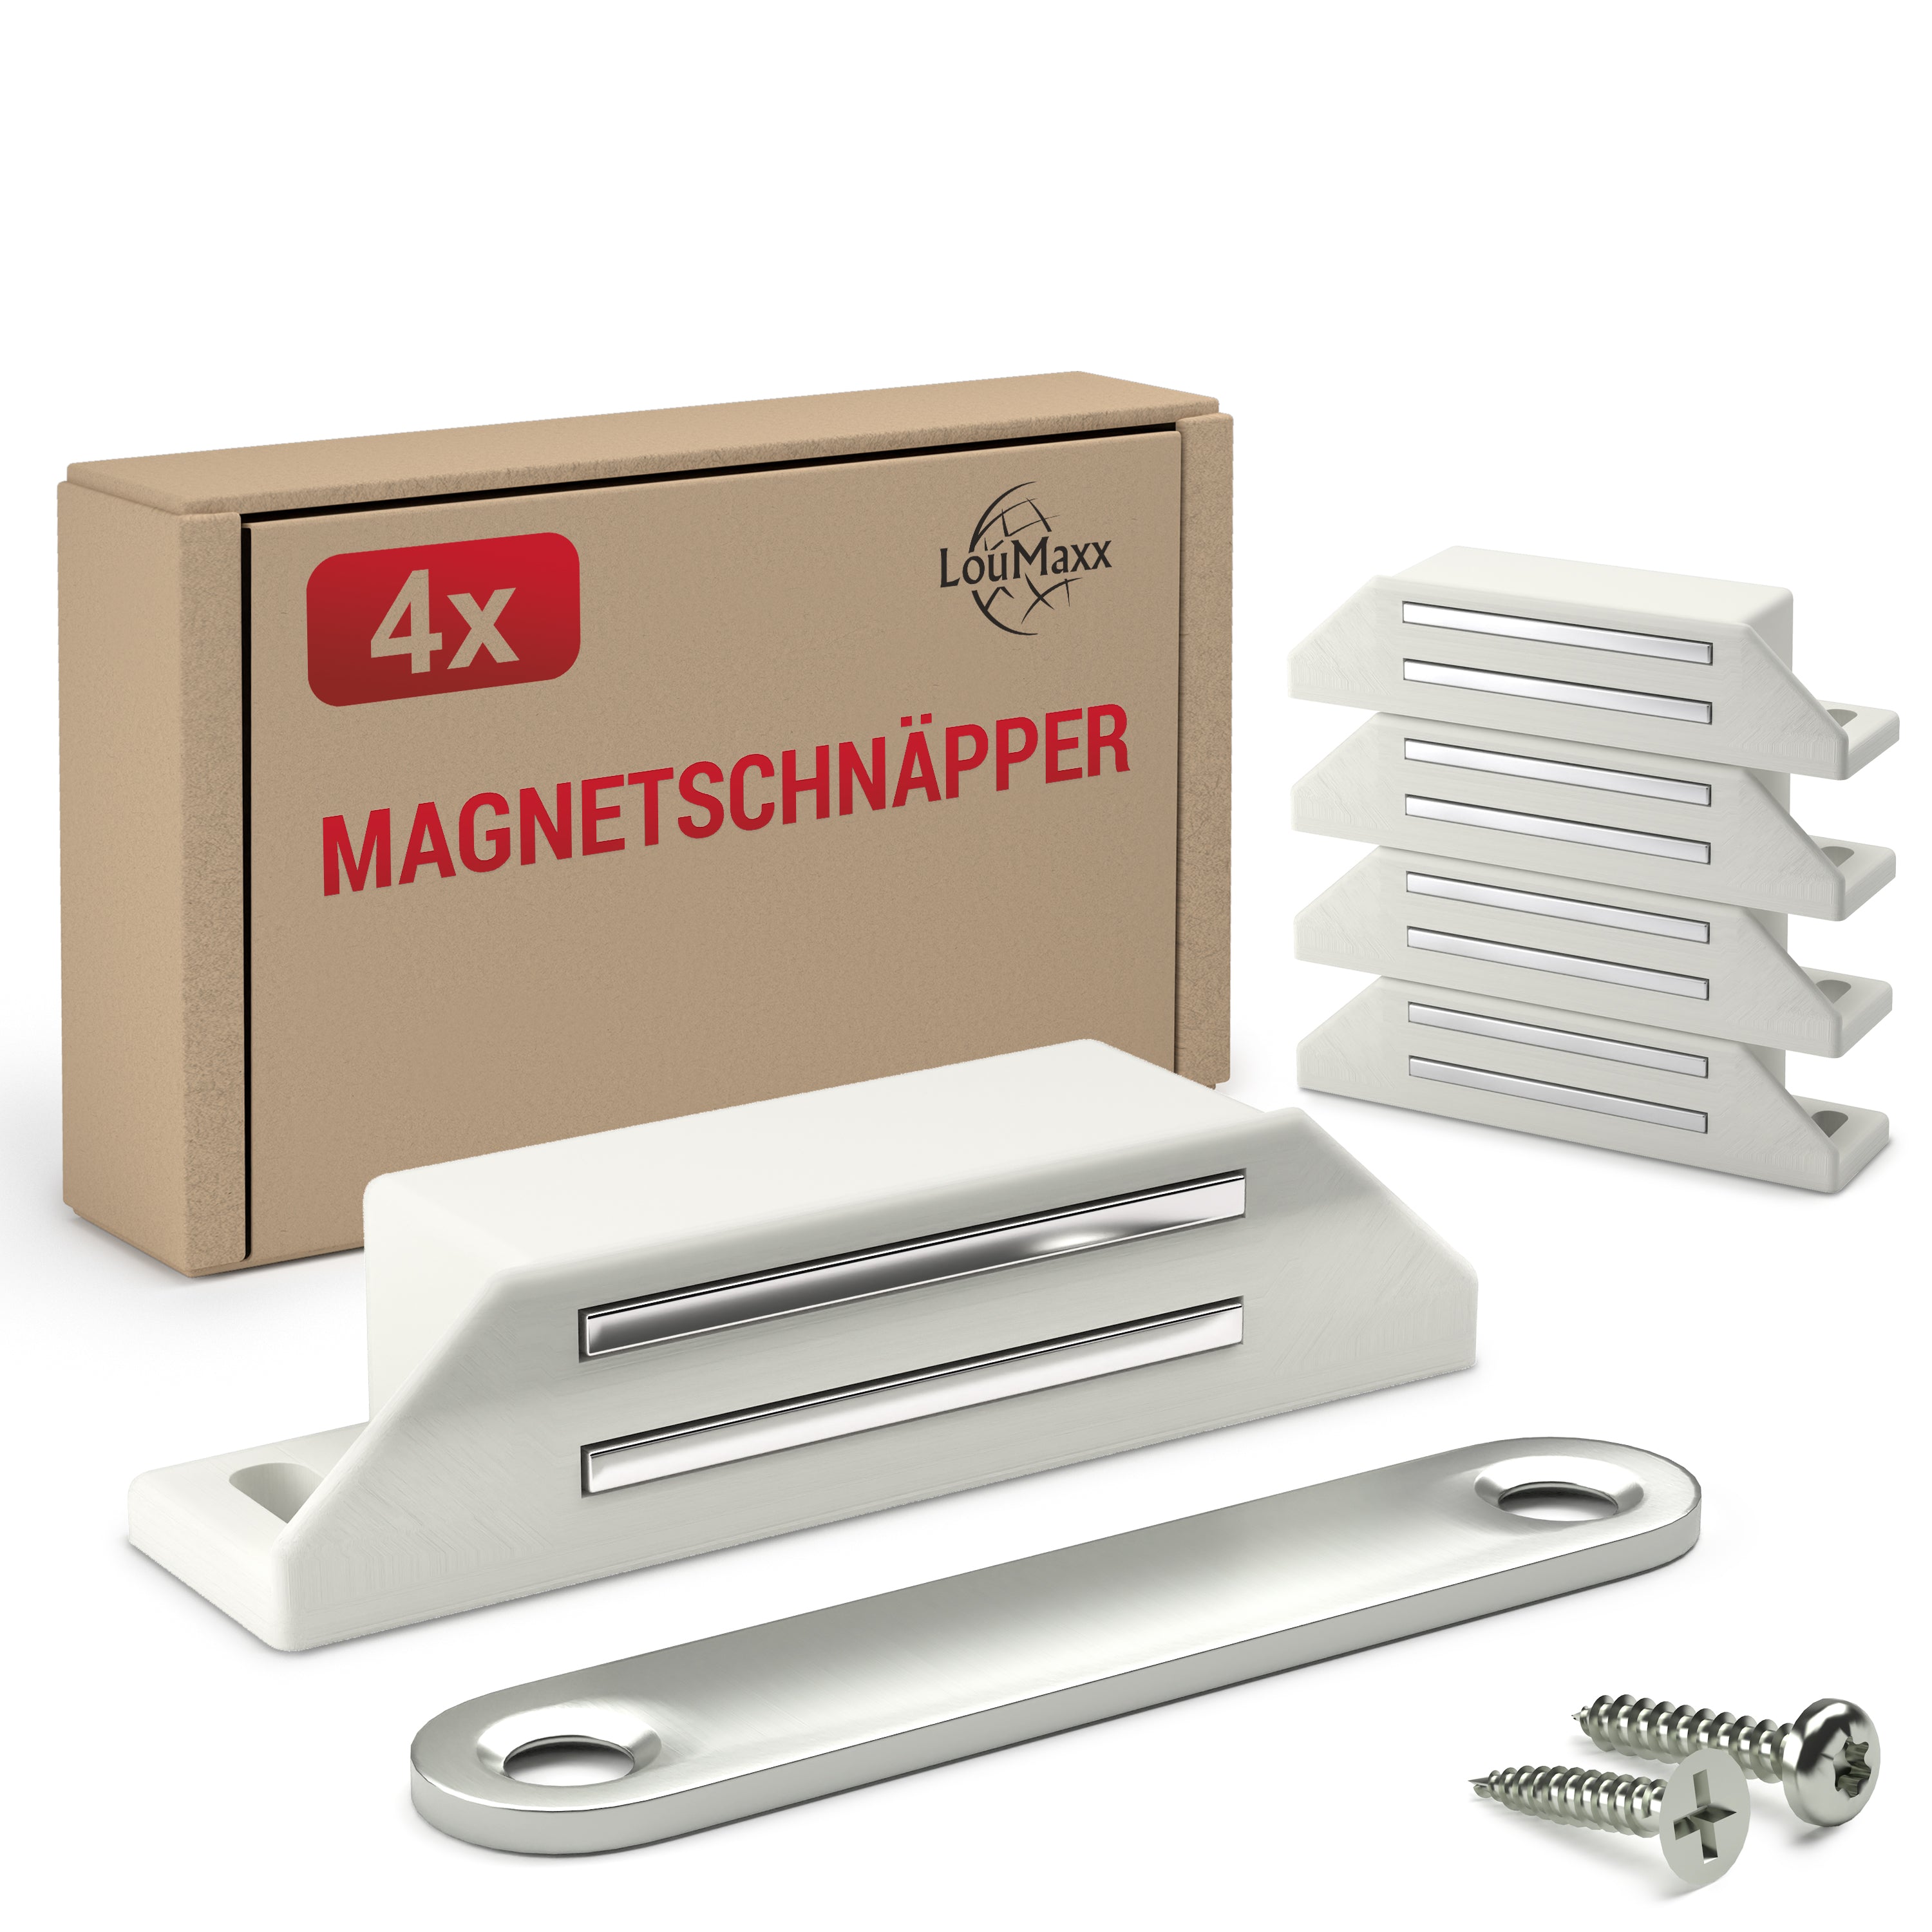 LouMaxx Magnetschnäpper sehr stark - Haltekraft 8kg - 4er Set in weiß – Türmagnet - Magnetverschluss - Tür Magnet - Magnetverschluss Schrank